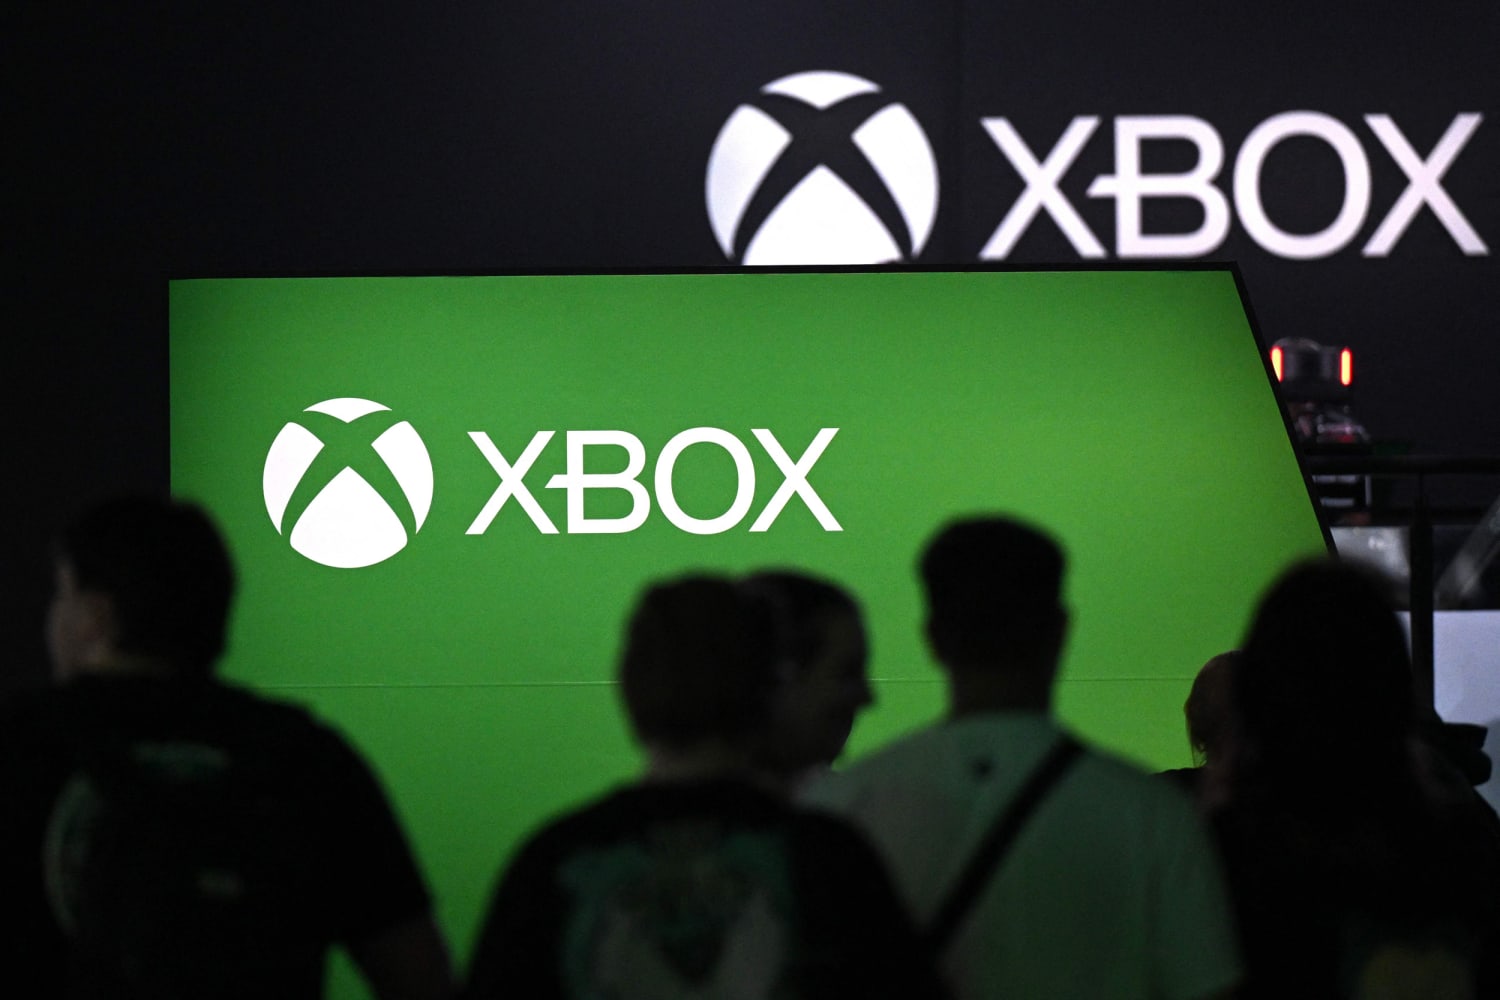 Planes clave de Xbox filtrados en correos electrónicos hechos públicos en el caso de la FTC de Microsoft